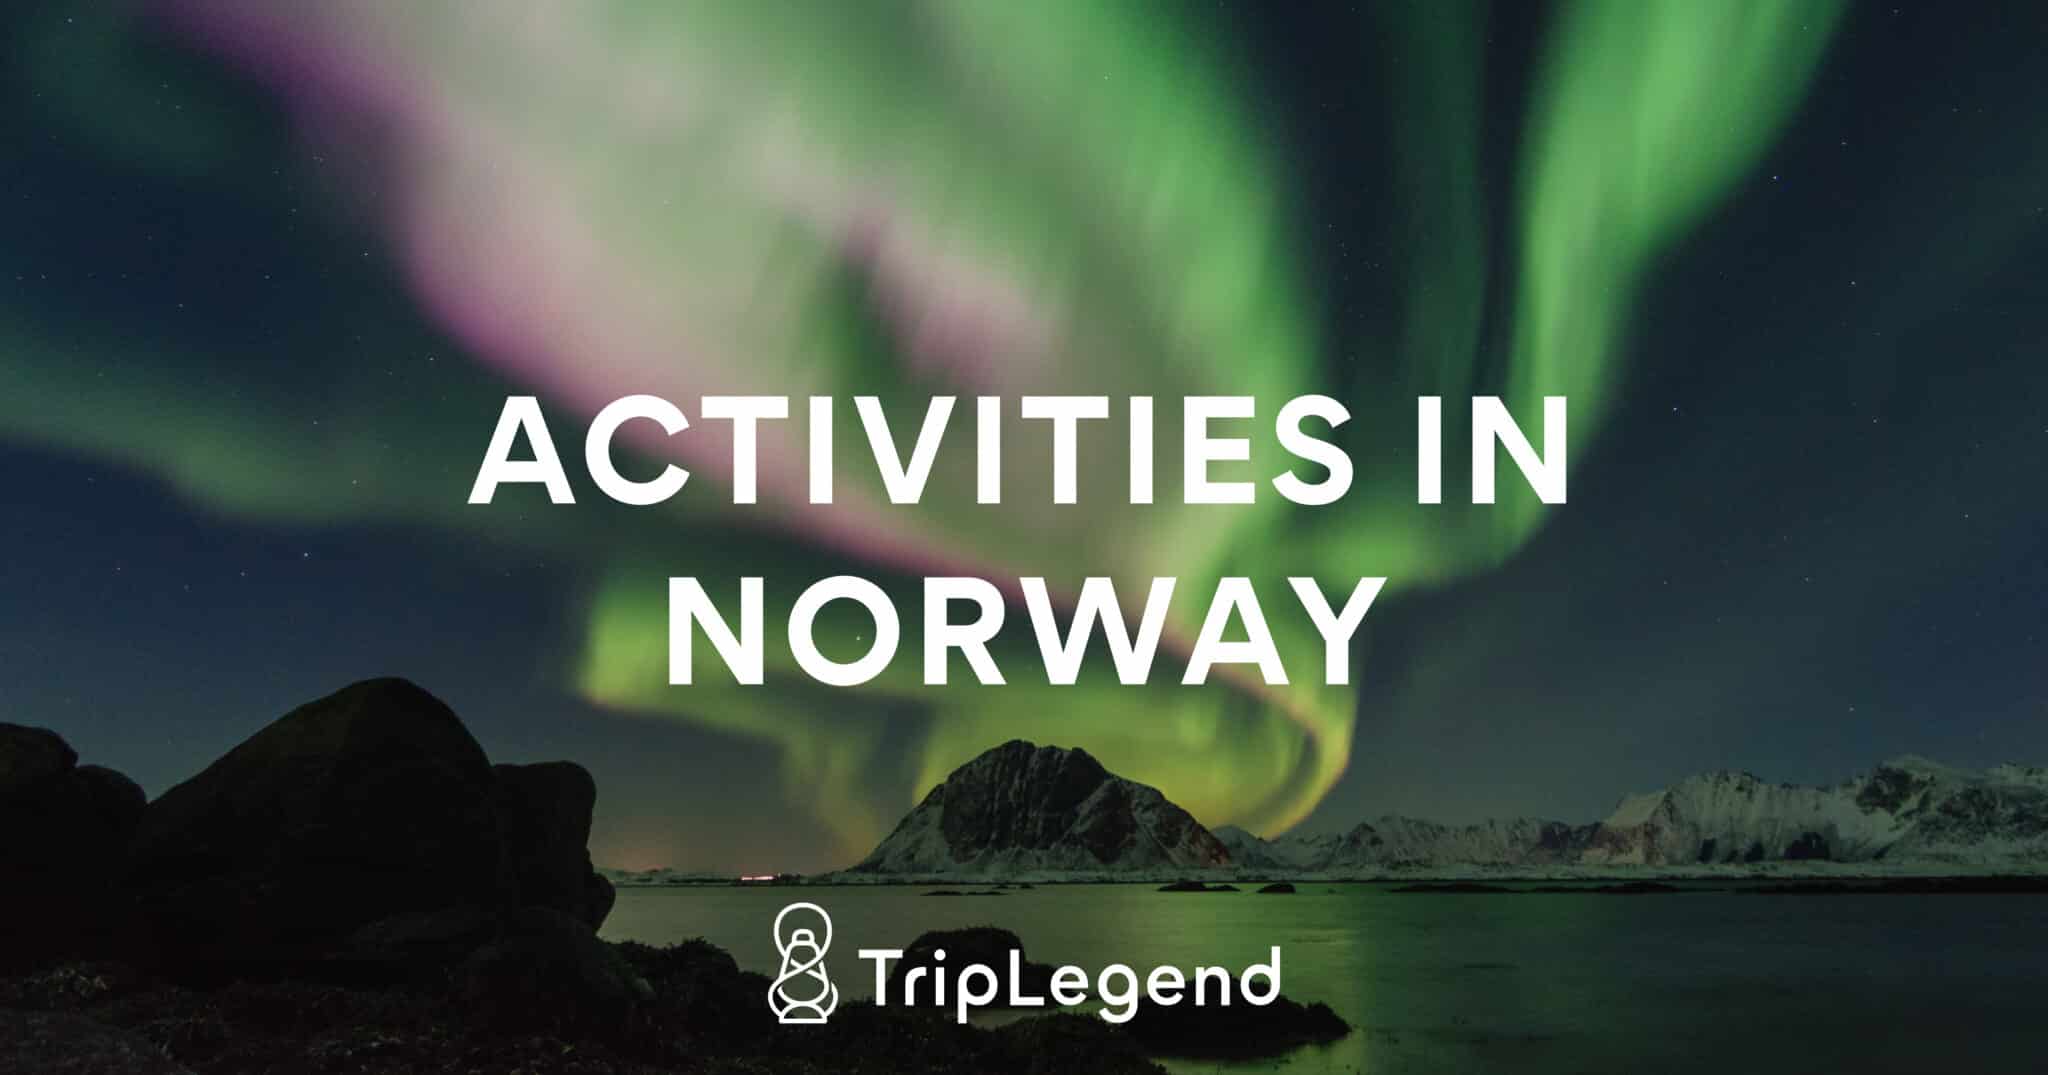 Activities in Norway - Featured image